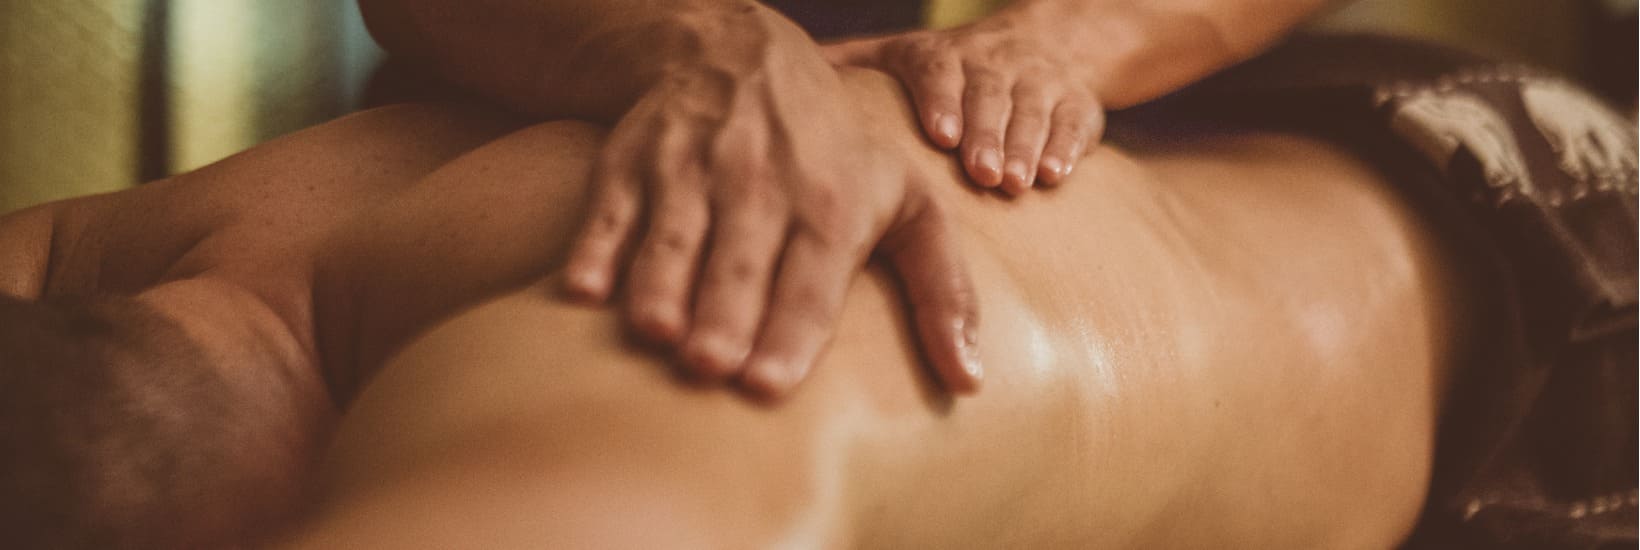 München sinnliche massagen Erotische Massagen